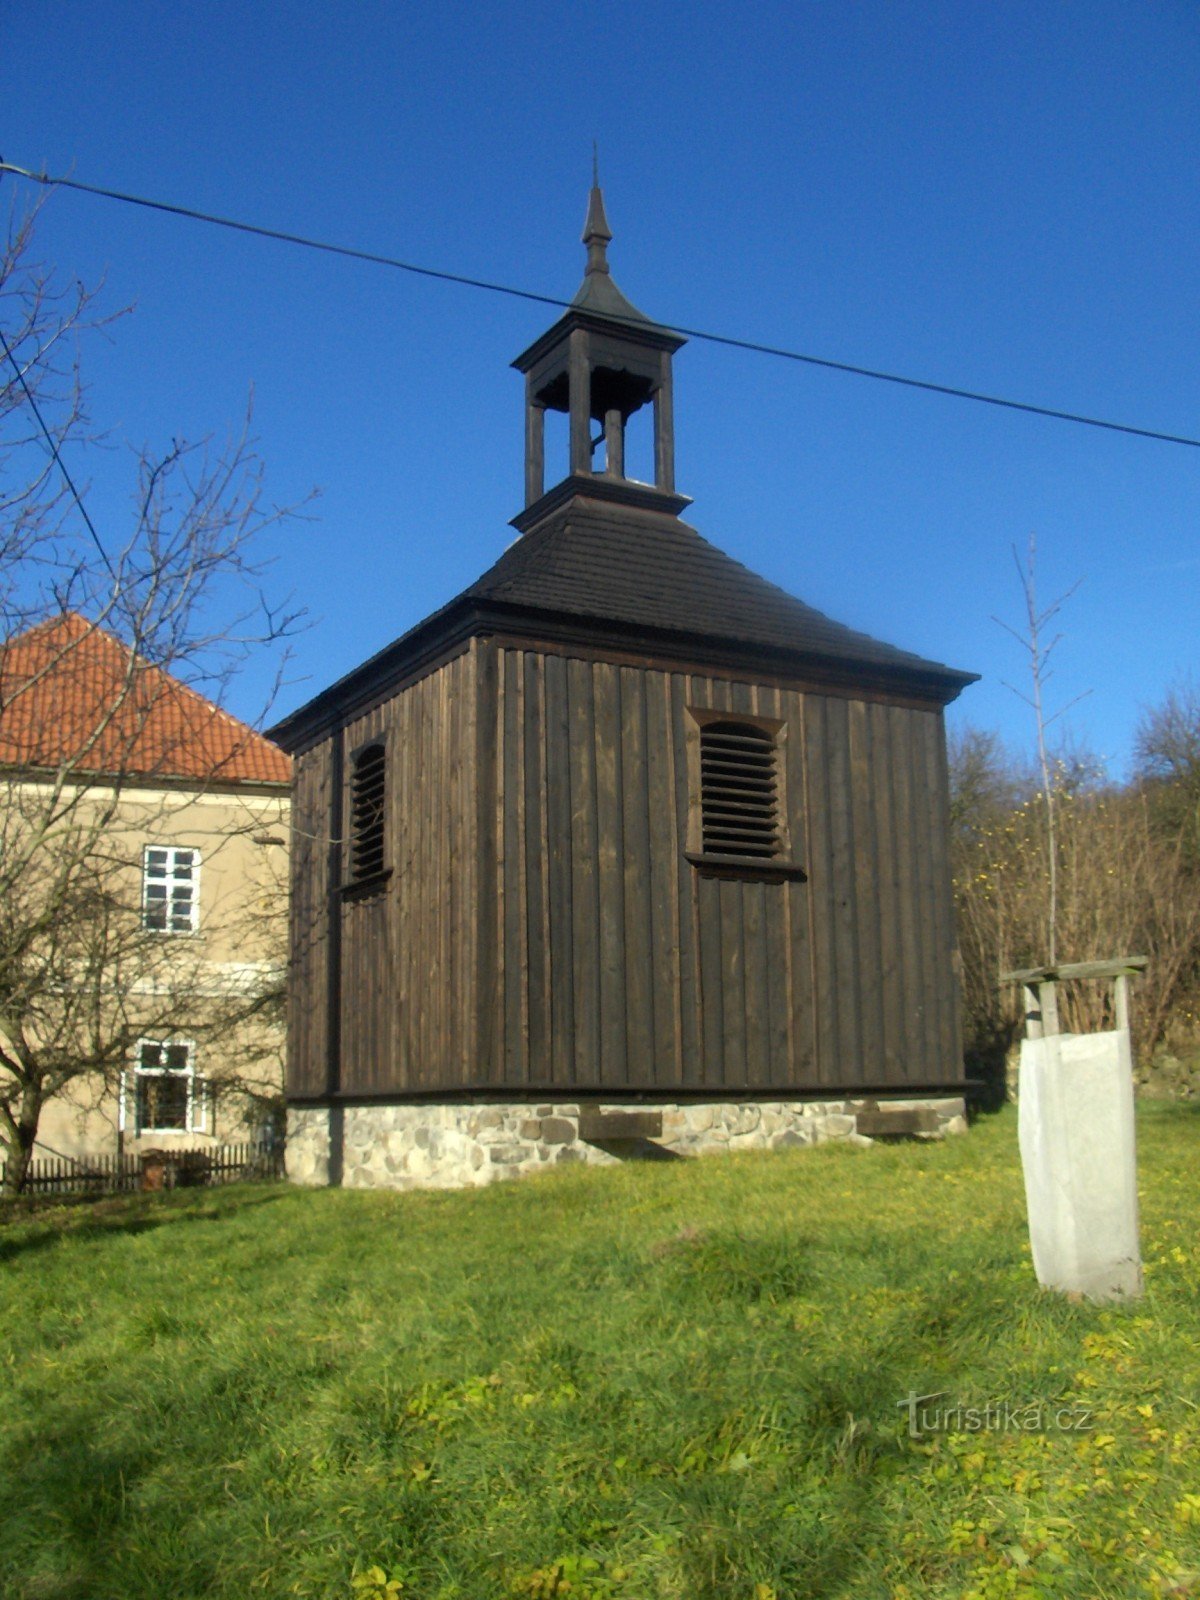 Hölzerner Glockenturm in Sutomi.